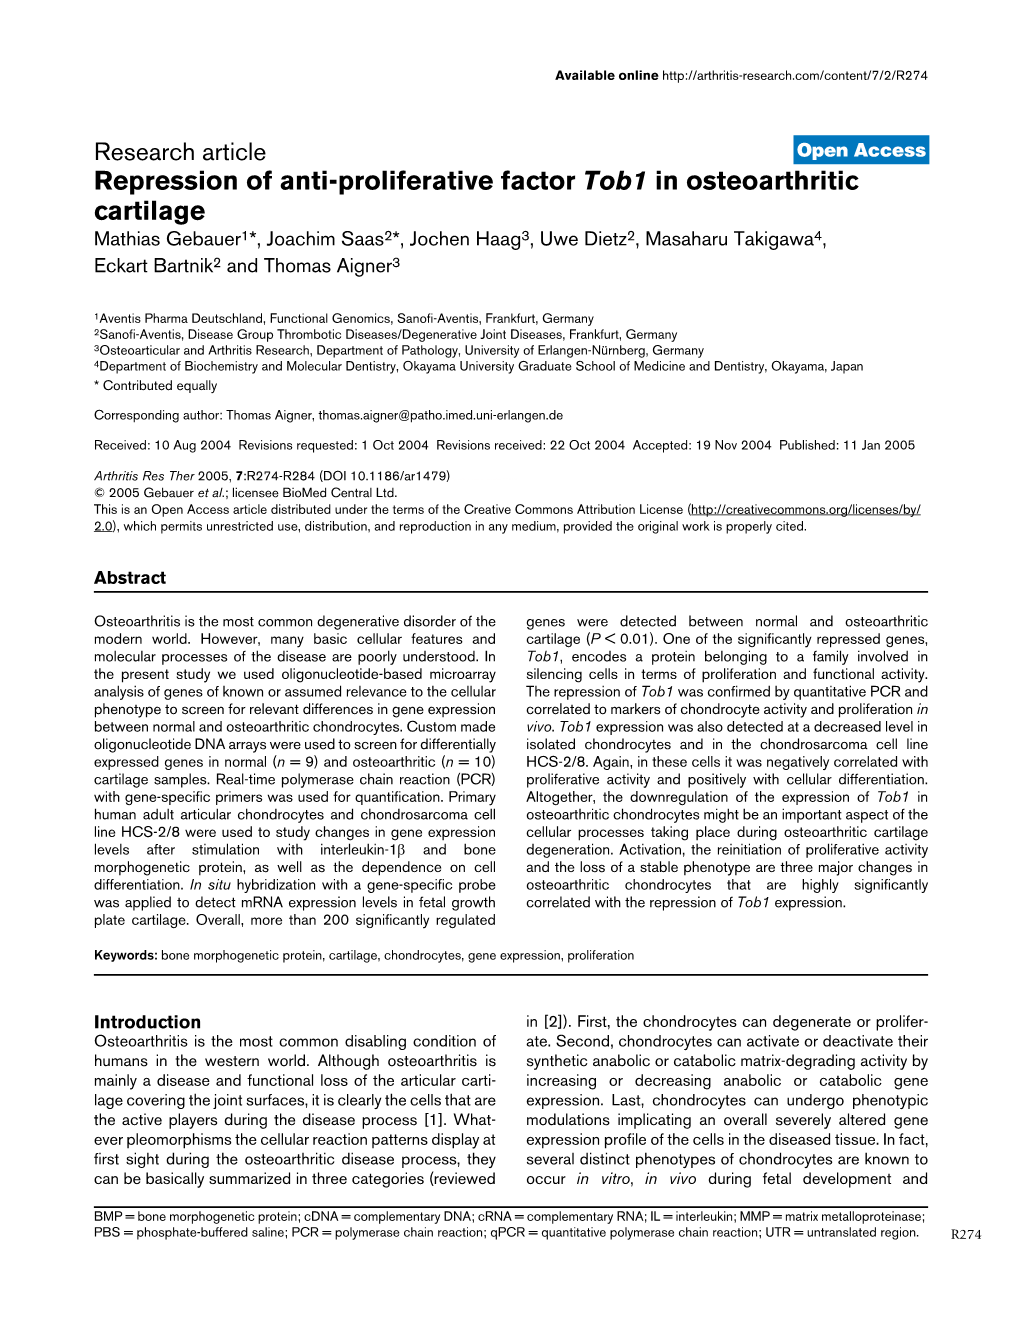 Repression of Anti-Proliferative Factor Tob1 in Osteoarthritic Cartilage